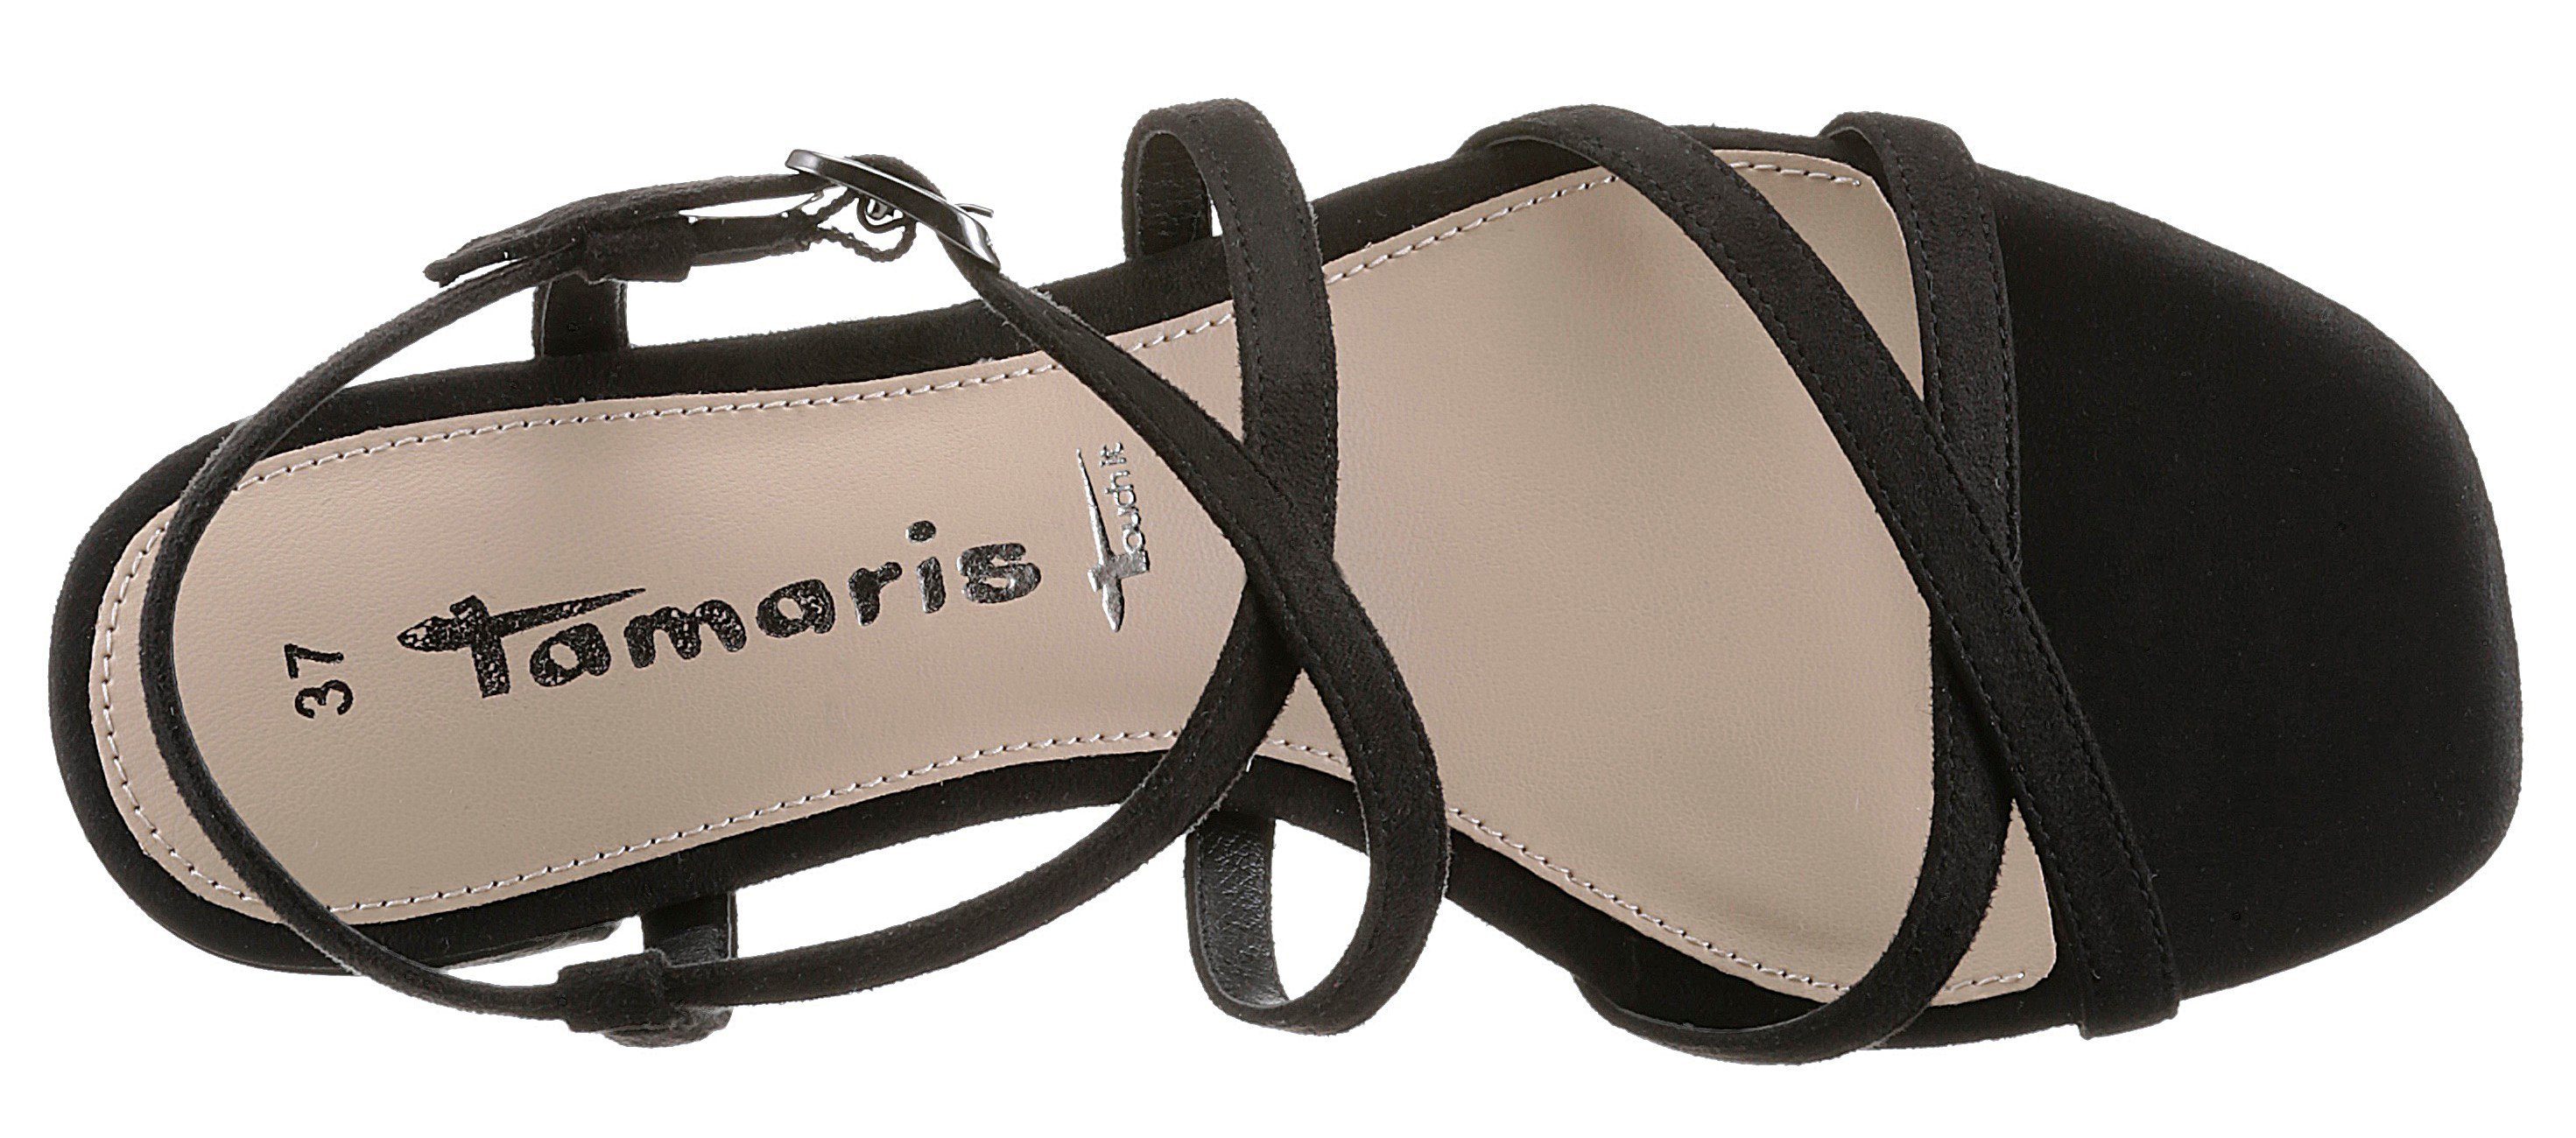 Tamaris schwarz Riemchen mit feinen Sandalette